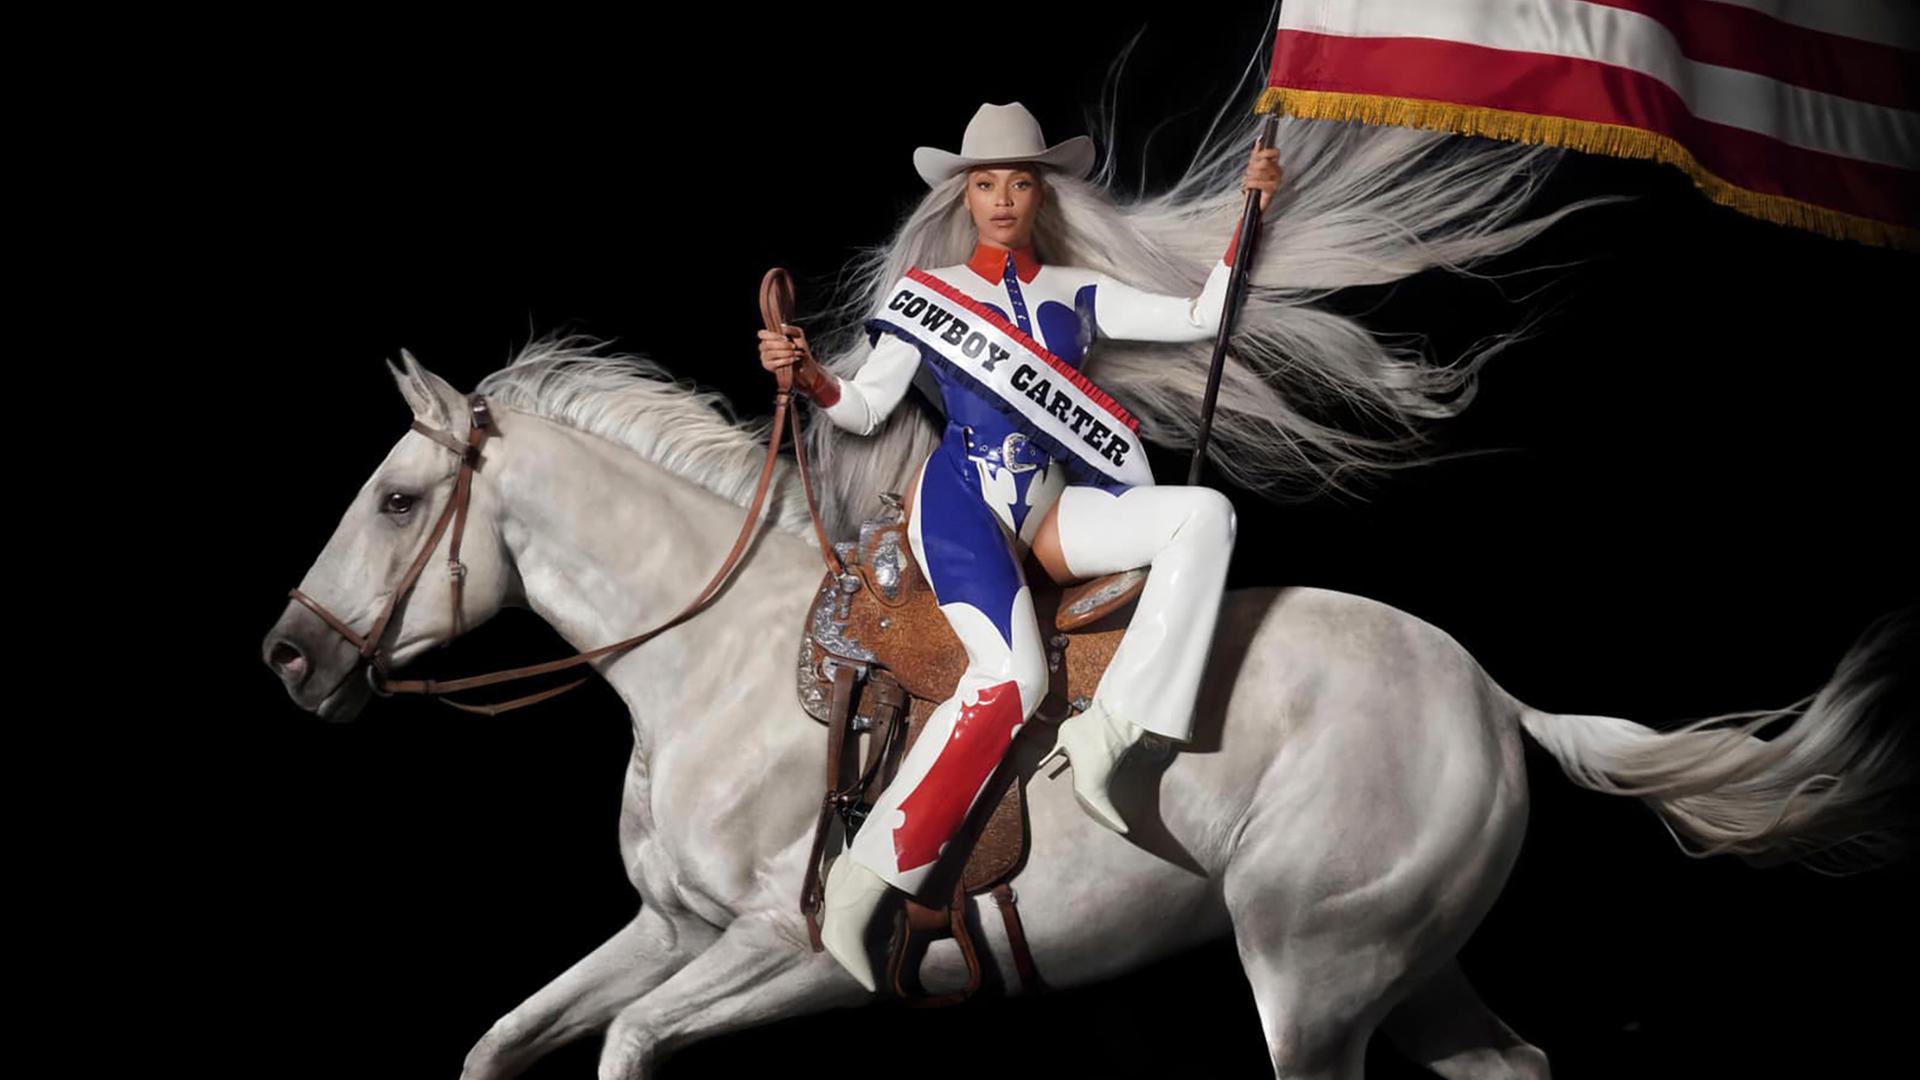 Auf dem Cover von "Cowboy Carter" reitet Beyoncé auf einem weißen Pferd und trägt die US-amerikanische Flagge.